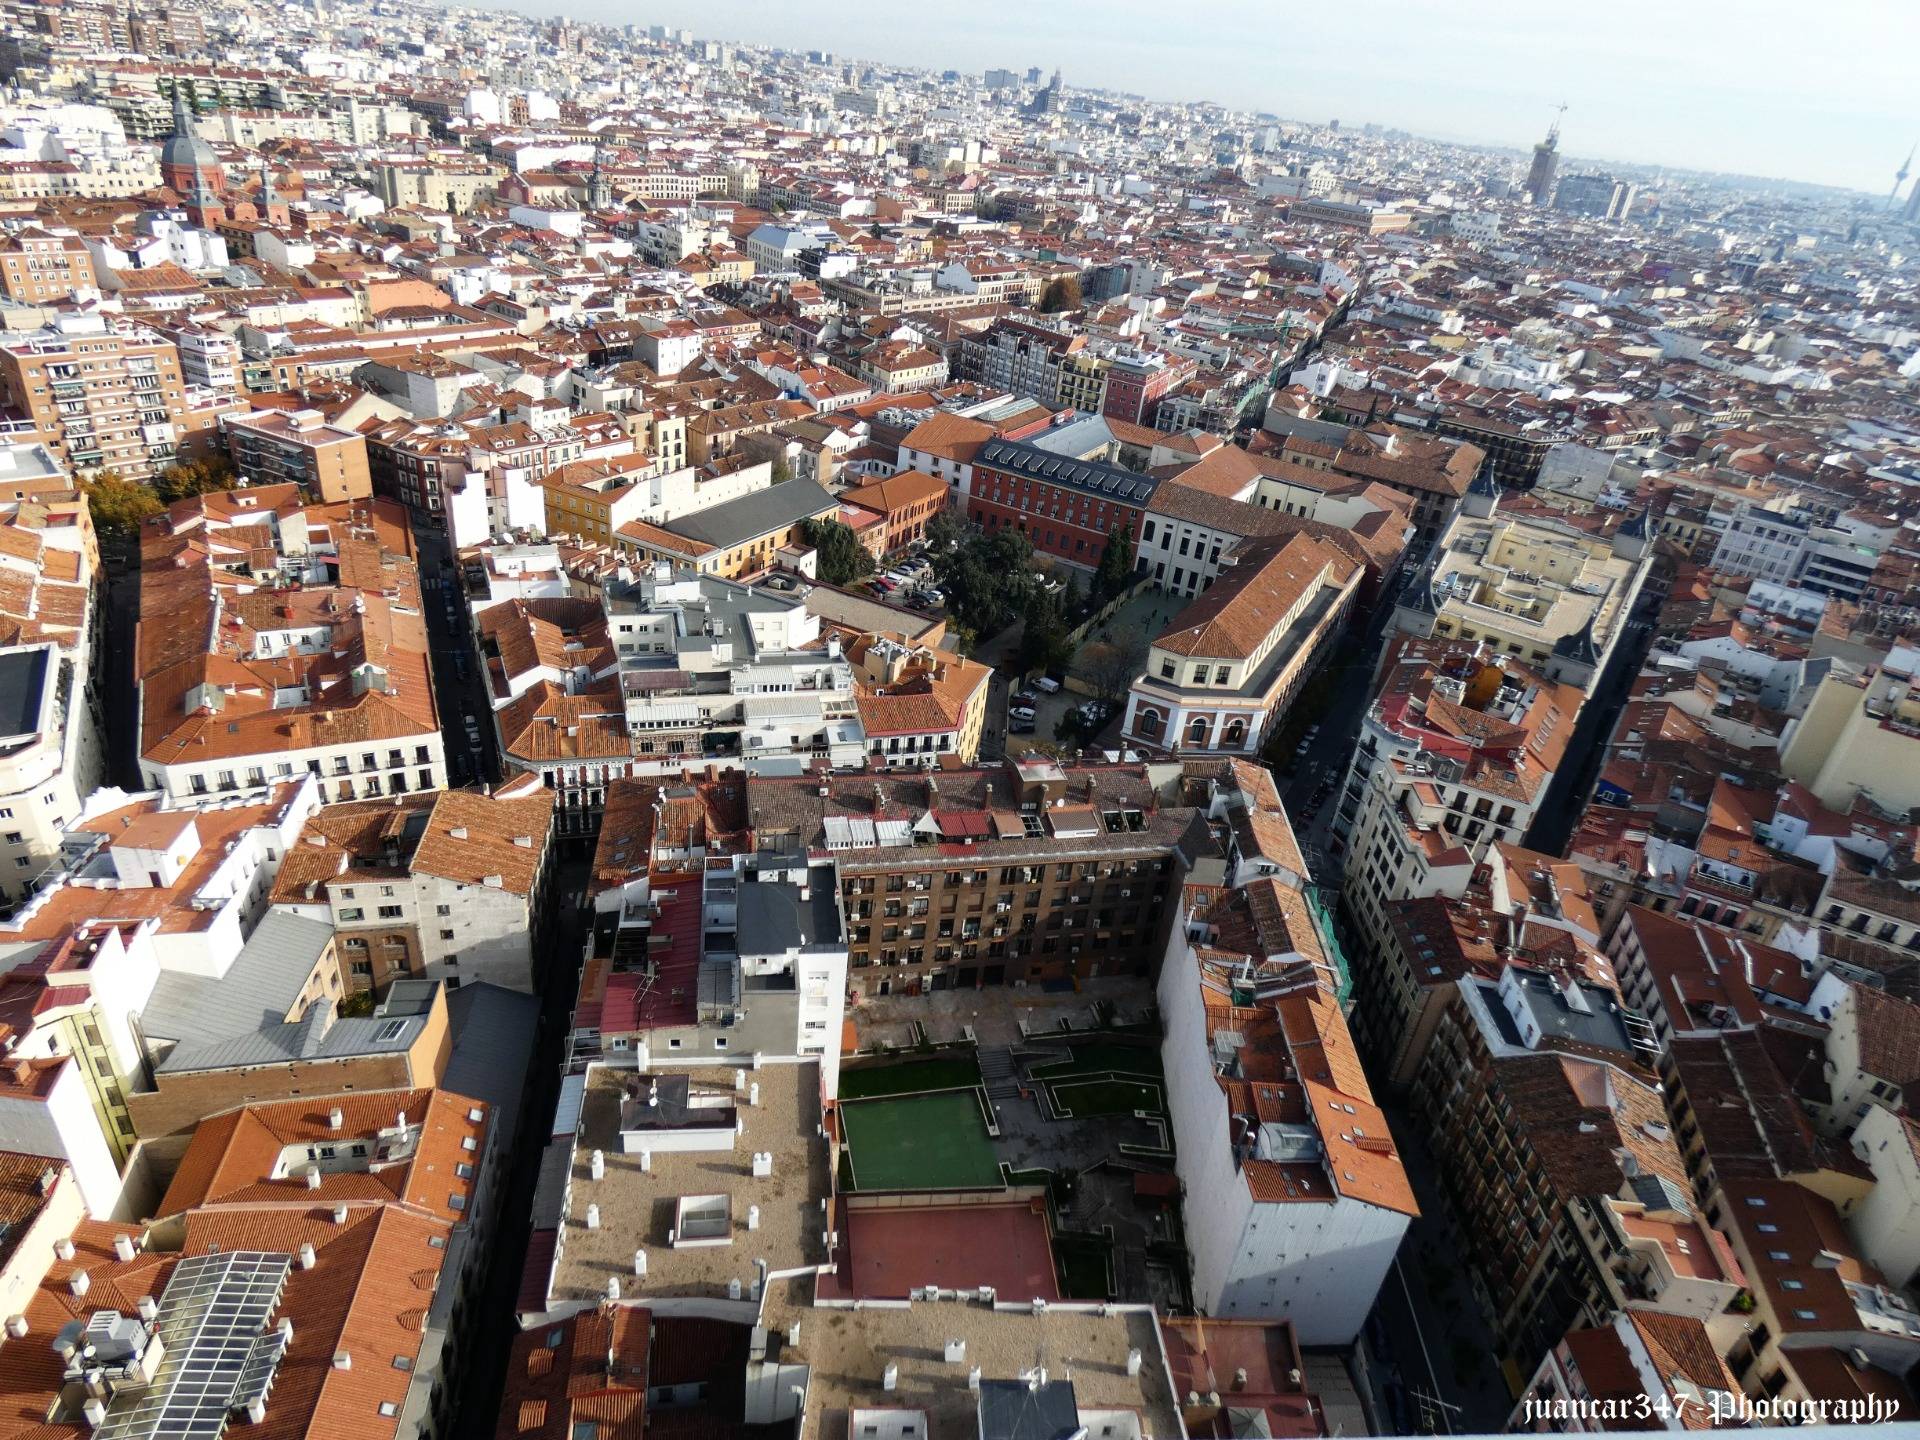 Madrid from the air: the terrace of the Hotel Ríu-Plaza de España